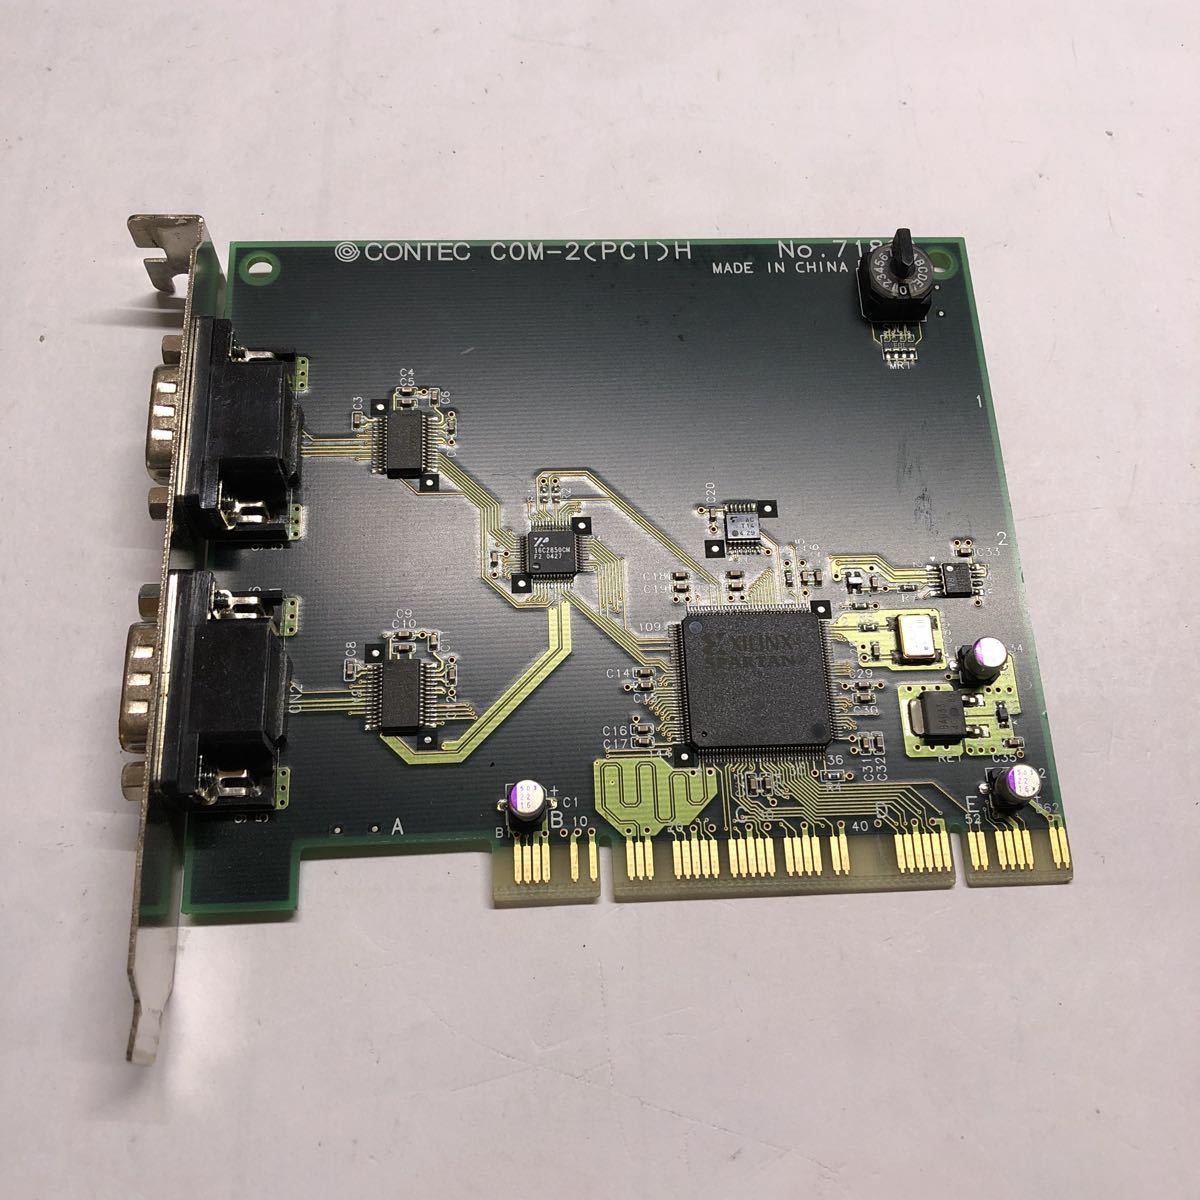 コンテック 8CHシリアル通信ボード COM-8(PCI)H(中古品) - alacantitv.com